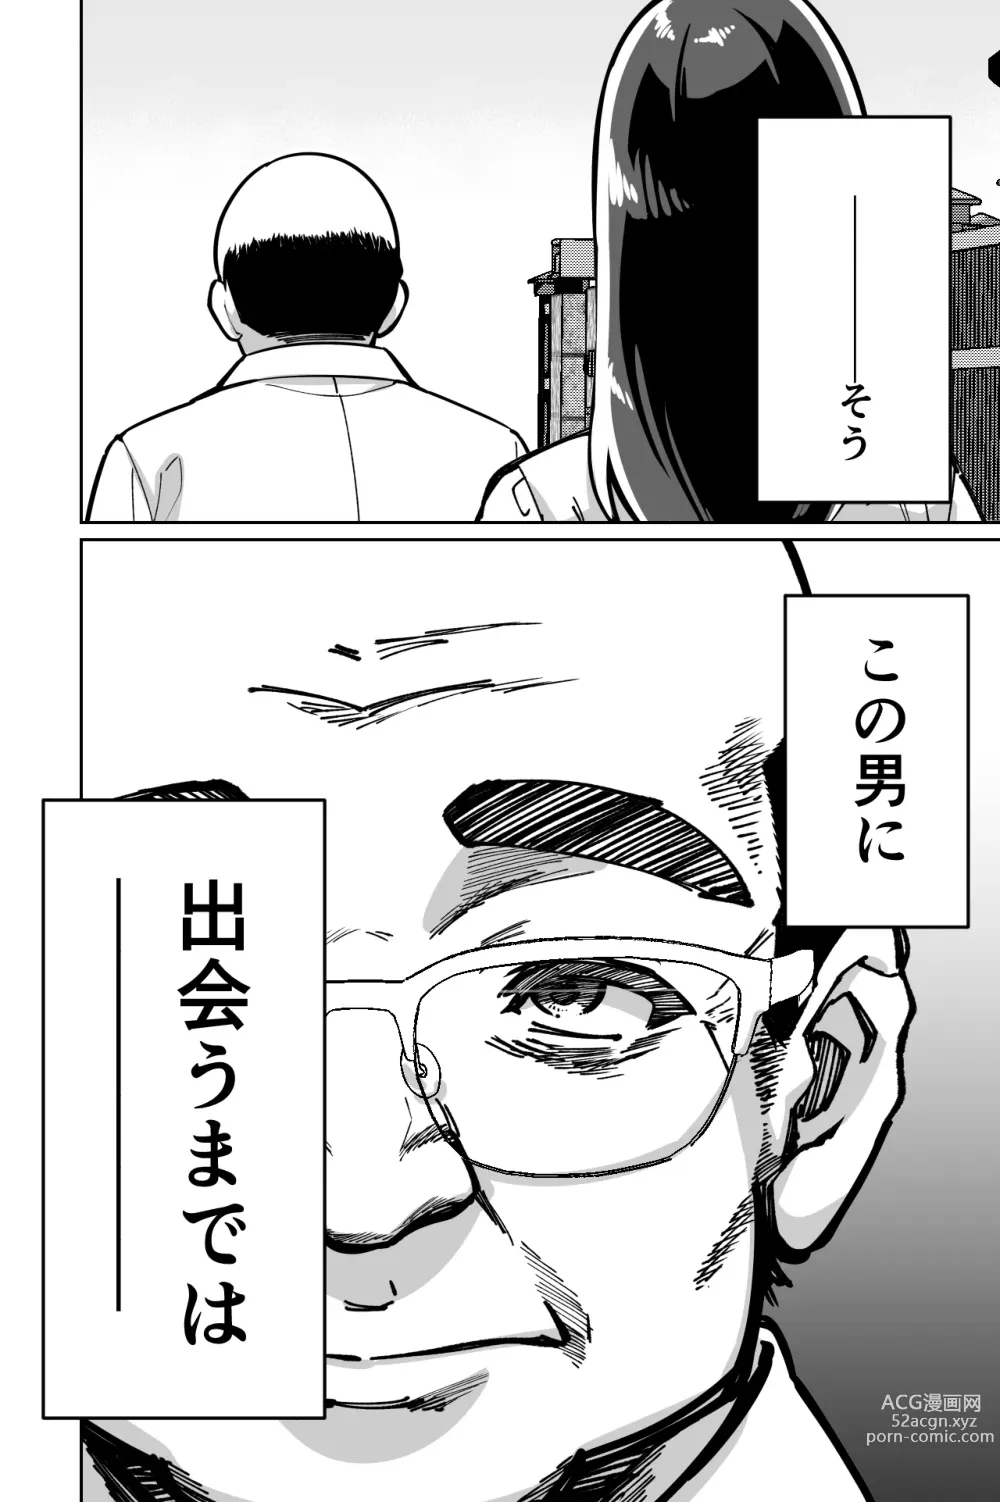 Page 4 of doujinshi Minpaku ~Ojou-sama-tachi wa Minpaku Keieisha no Wana ni Ochiru~